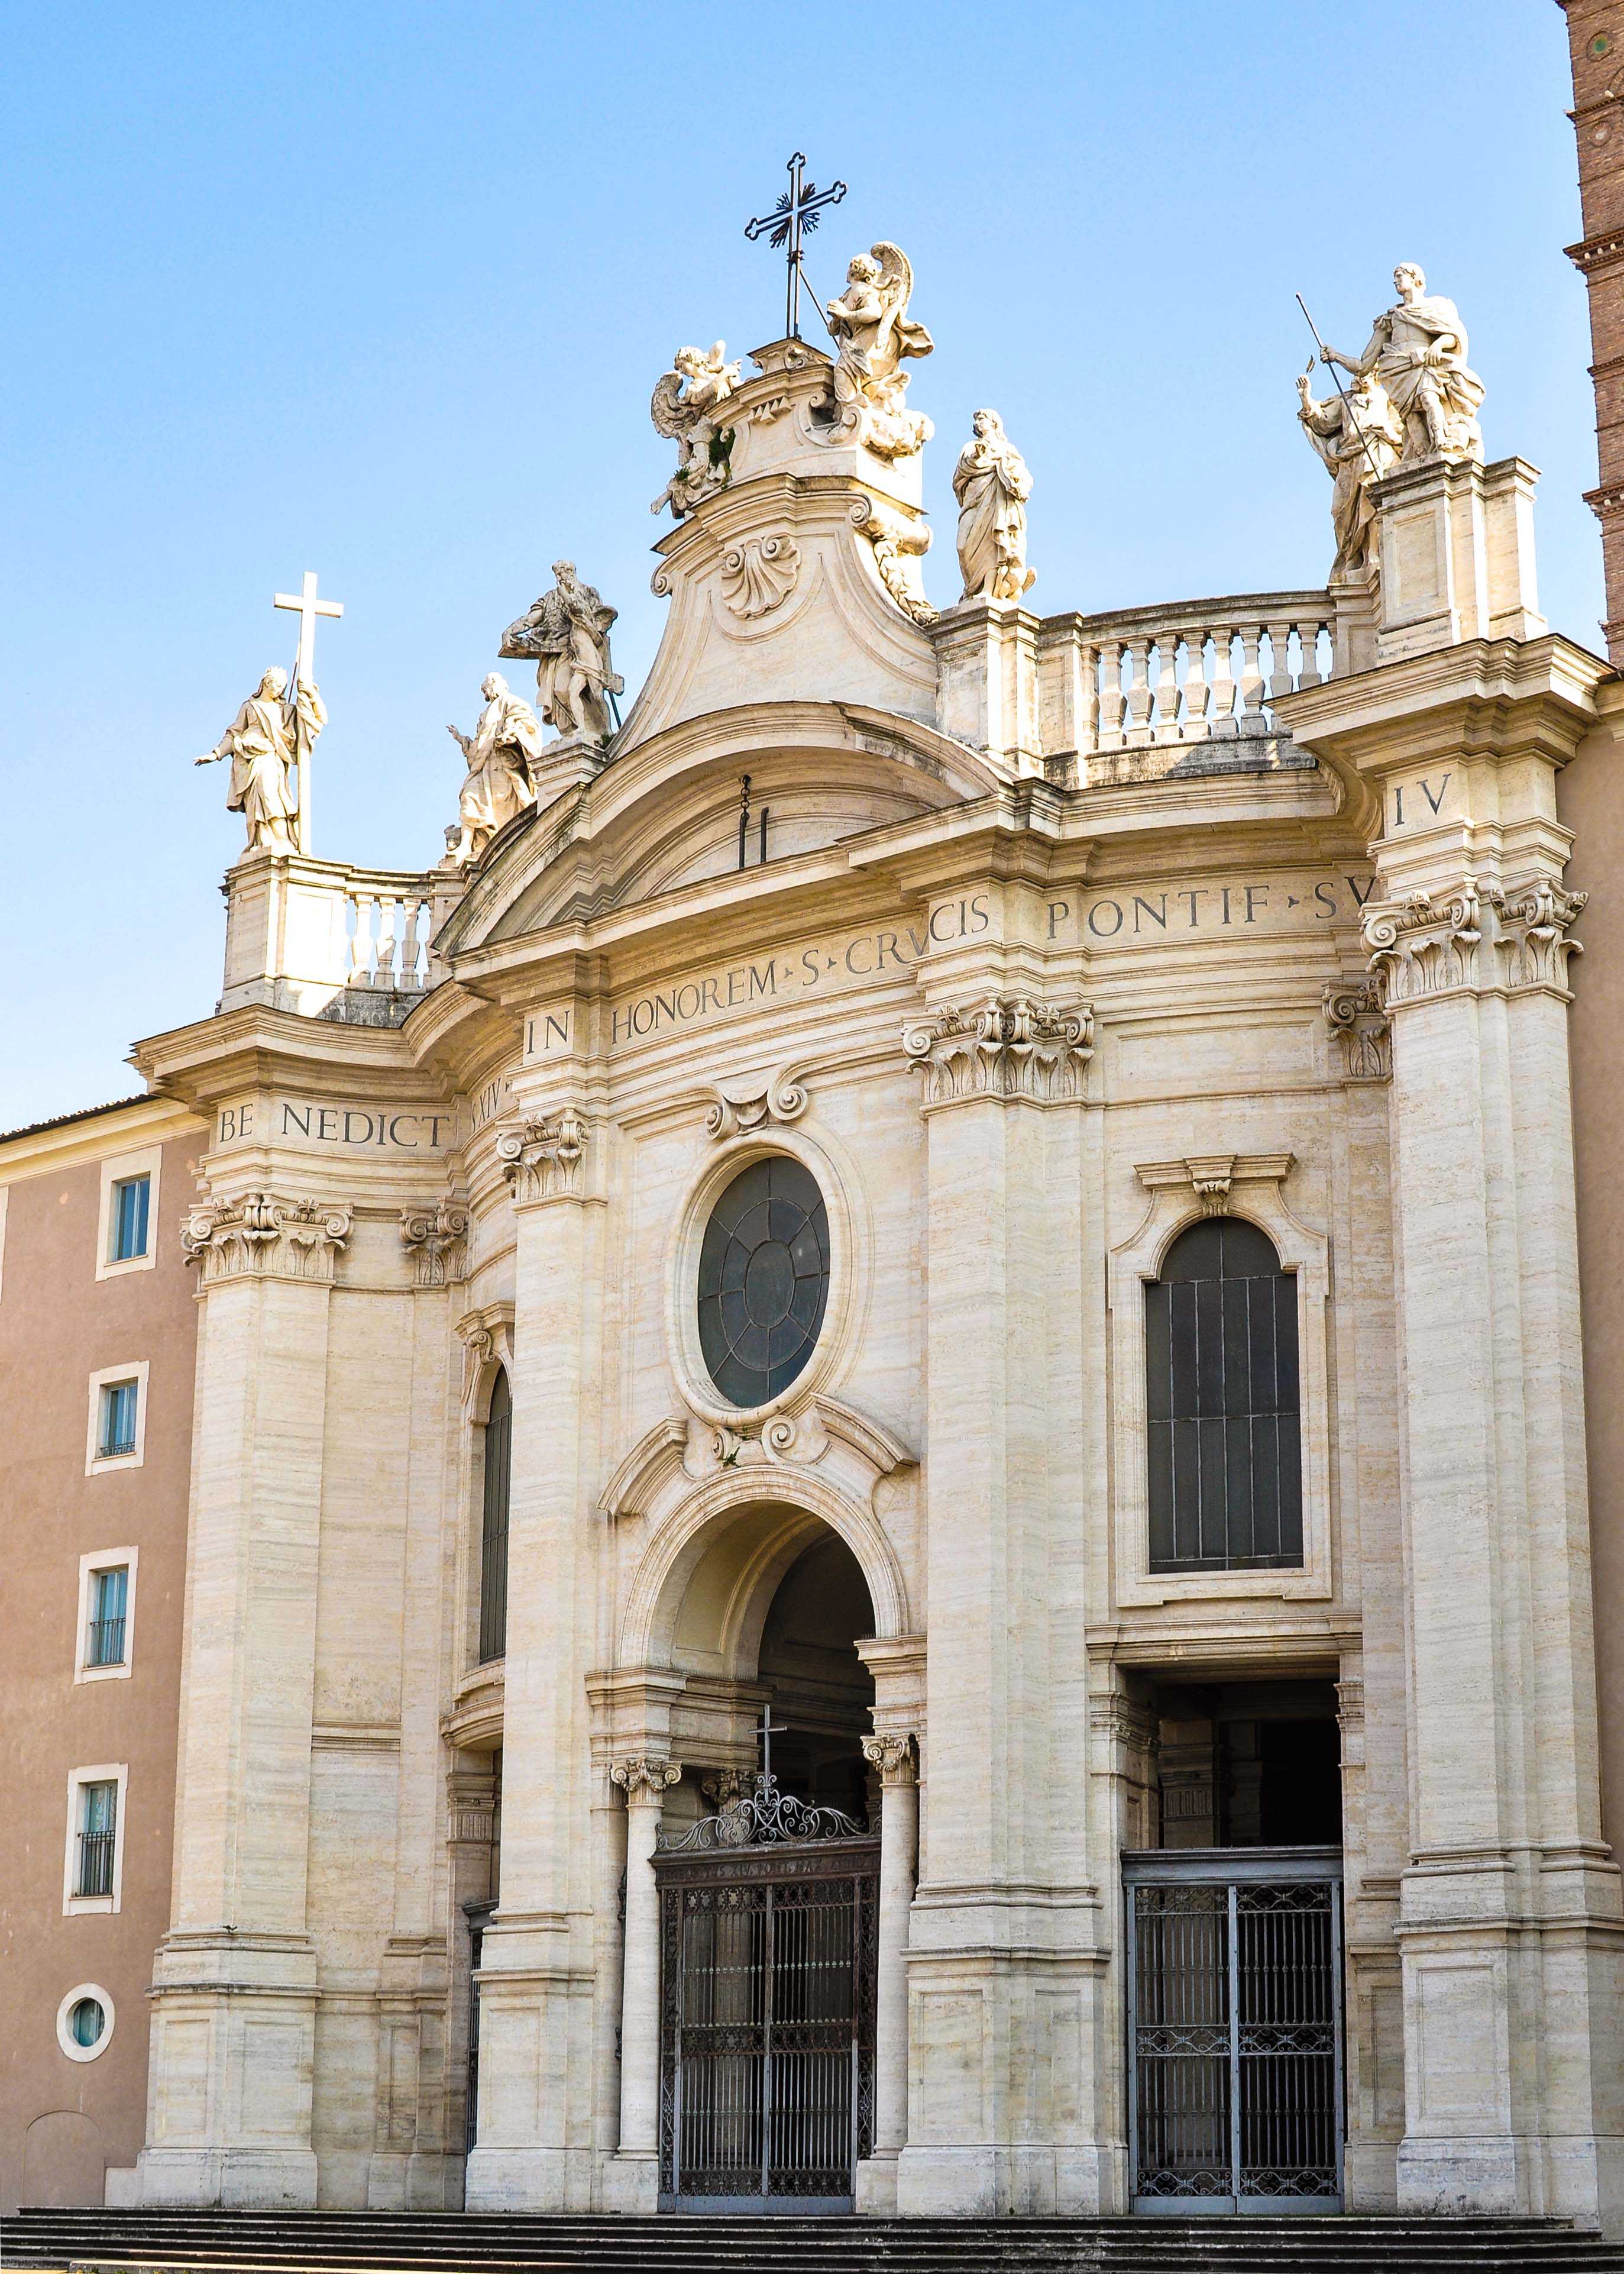 Santa Croce in Gerusalemme, Rome: All Year